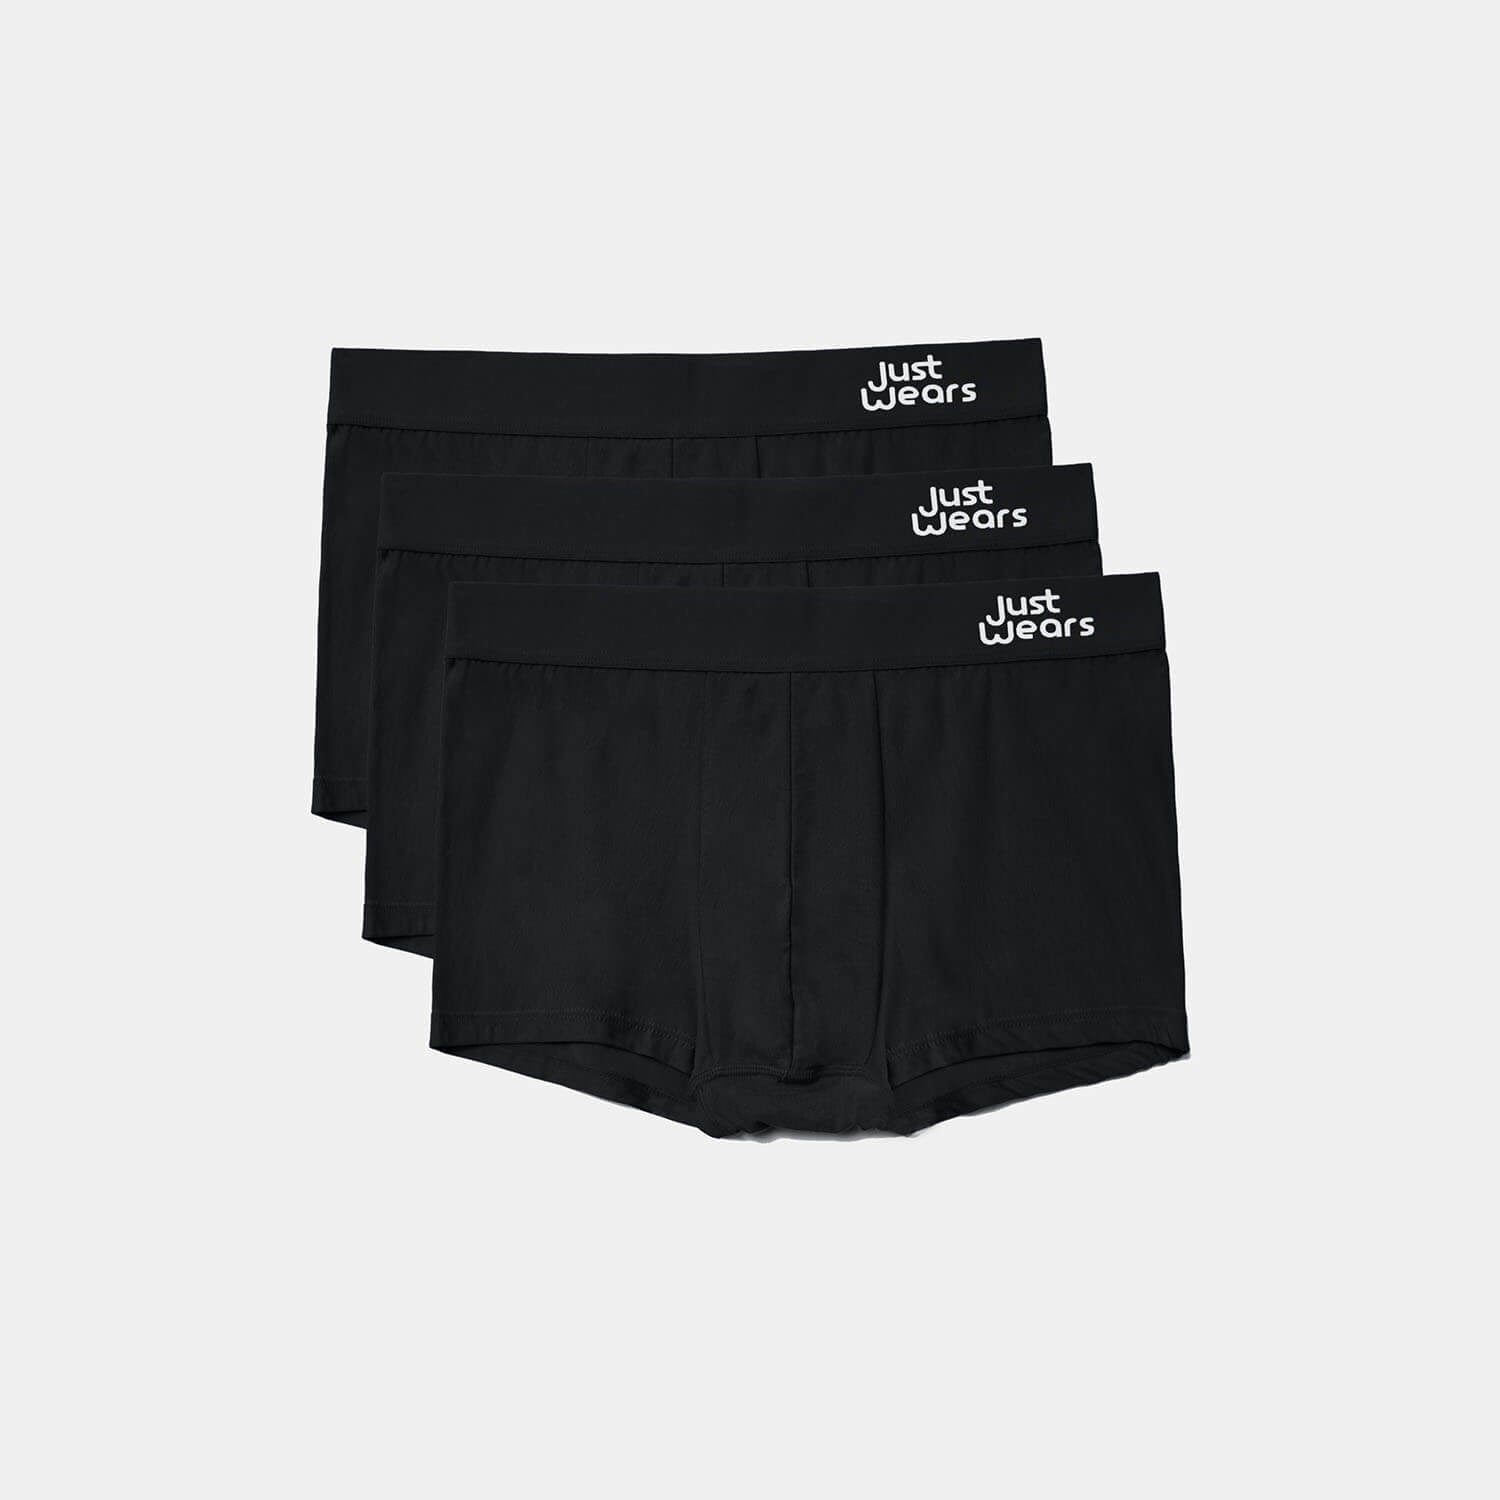 Acrylic Drops Men's Short Trunk Sexy Mens Underwear by NDS Wear